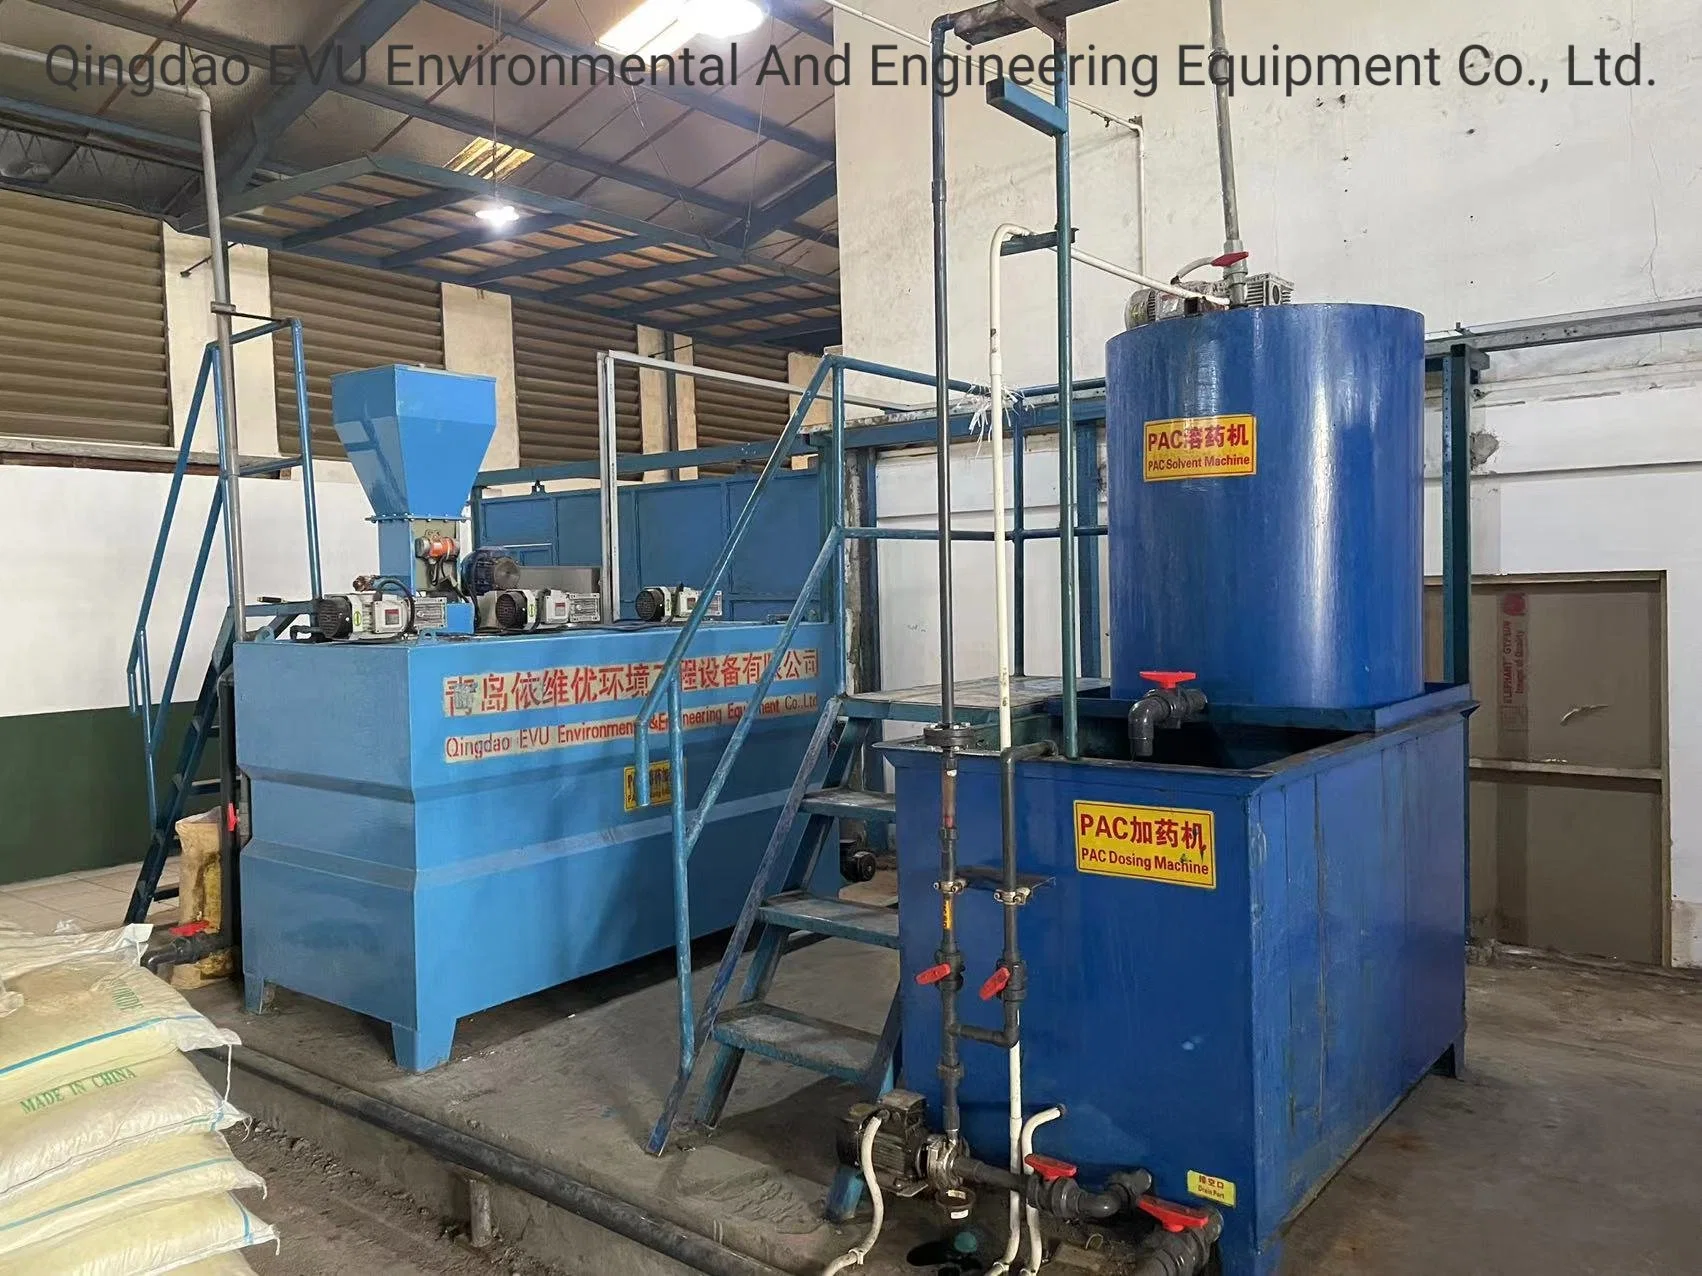 Sistema de eletrocoagulação Industrial Resíduos têxteis máquina de coagulação de purificação de água elétrico de efluente de Tratamento de Esgoto Daf de equipamento de floculação